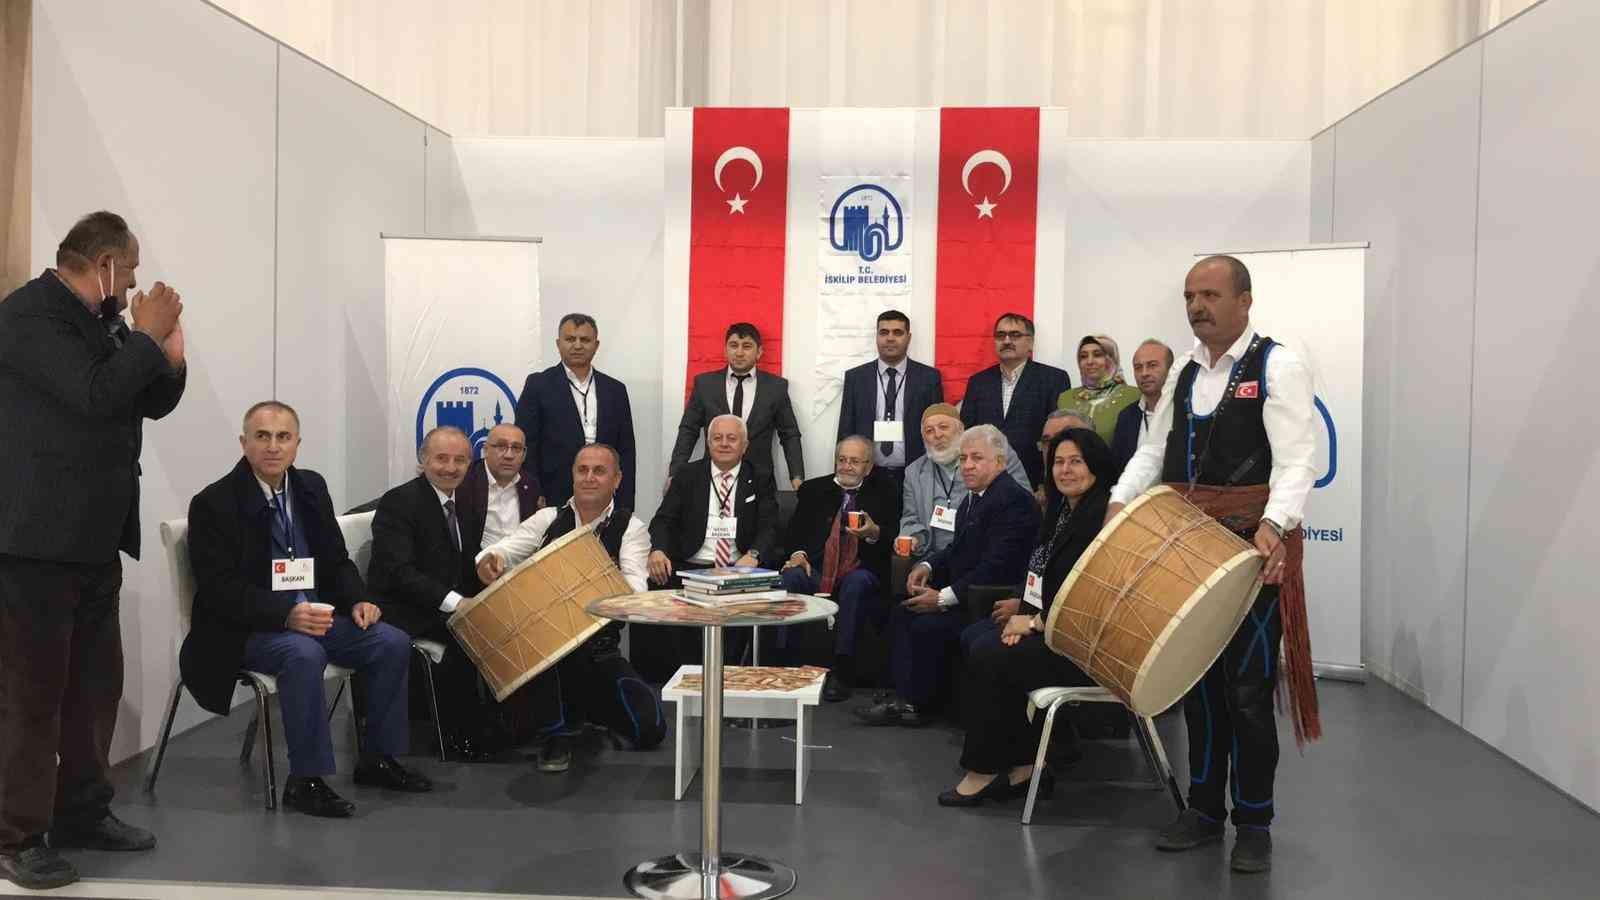 İstanbul Maltepe etkinlik alanında düzenlenen tanıtım günleri devam ediyor